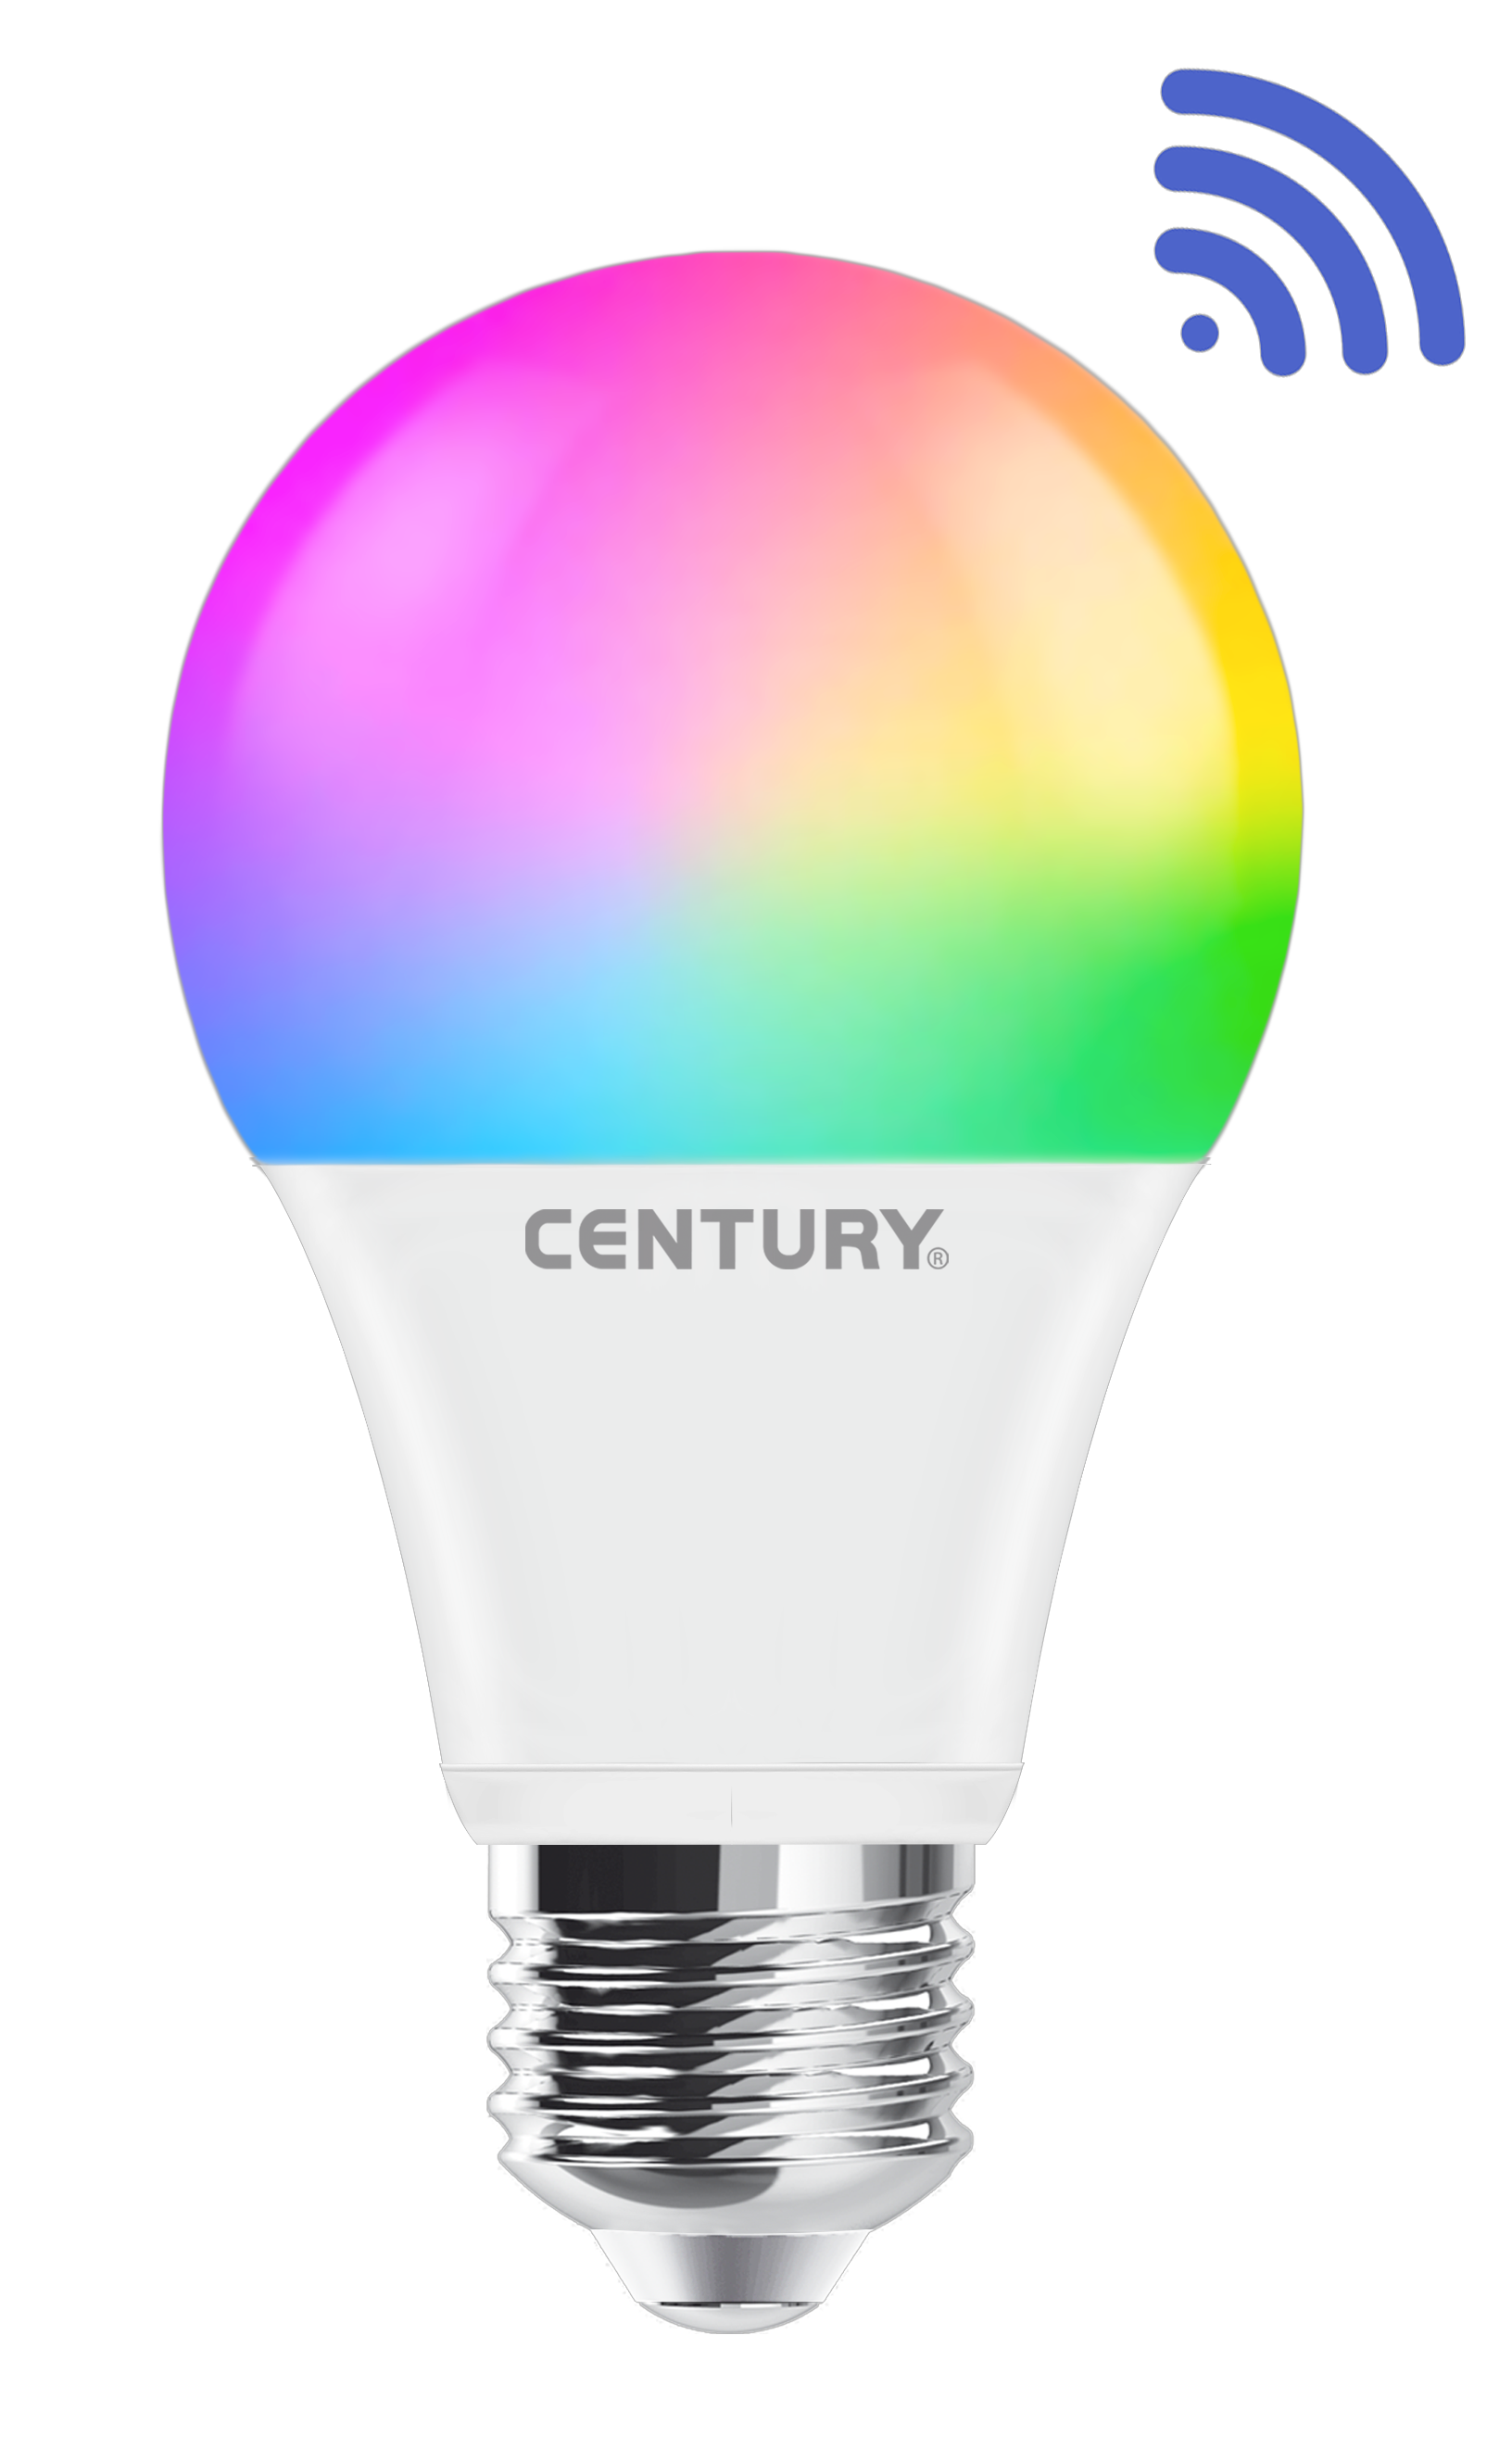 Aria Smart Lampada Led RGB WI-FI